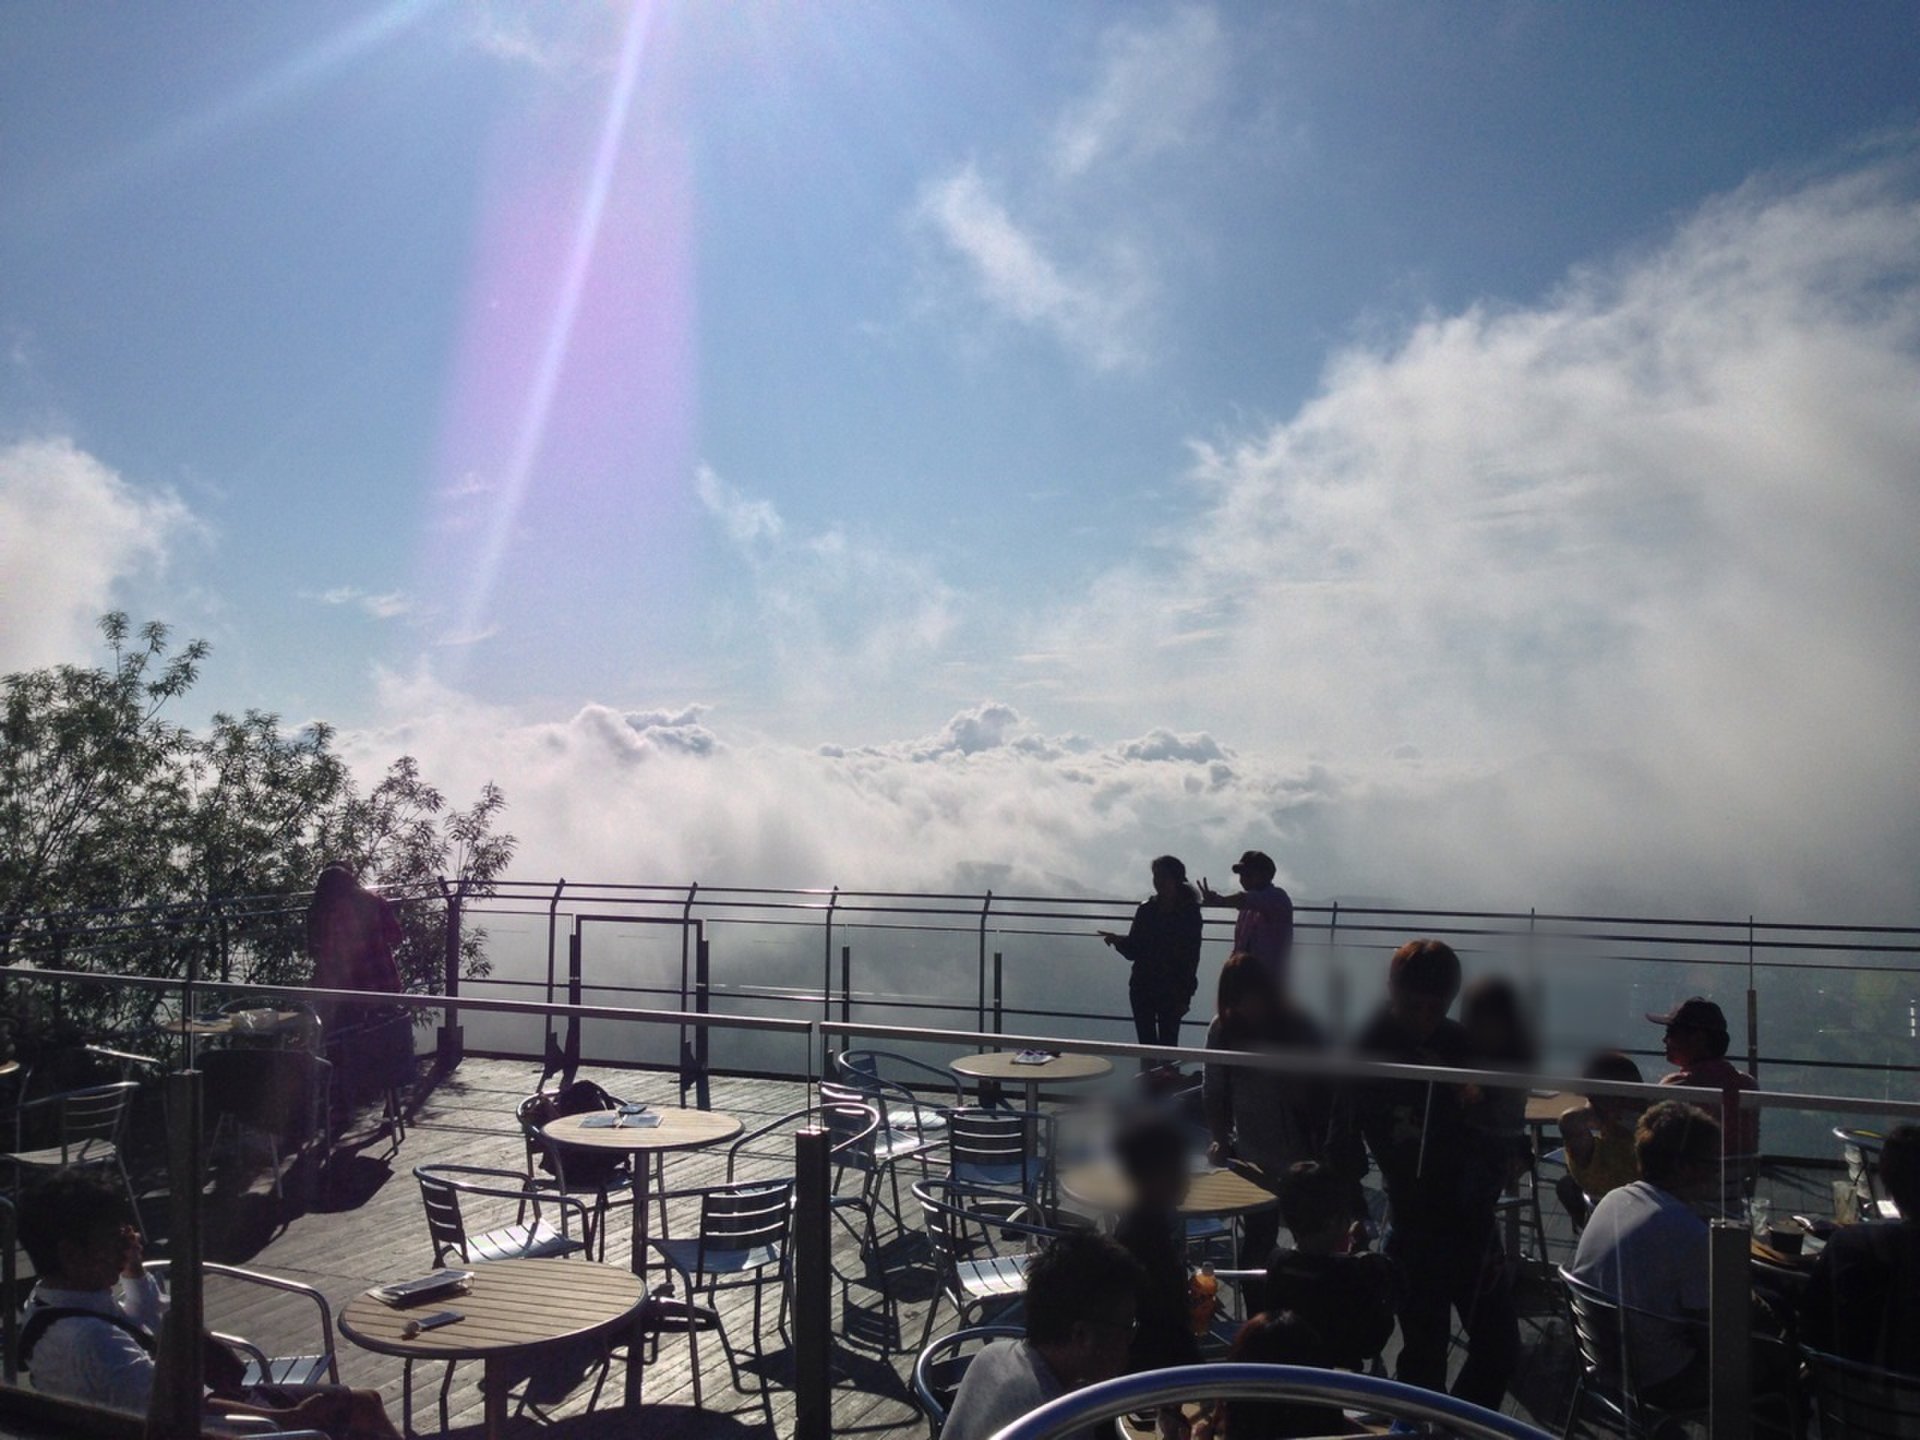 【トマム】憧れの雲海テラスで、雲海と山々の絶景を楽しむ♪雲を眺めて、てんぼうかふぇでコーヒーを♪